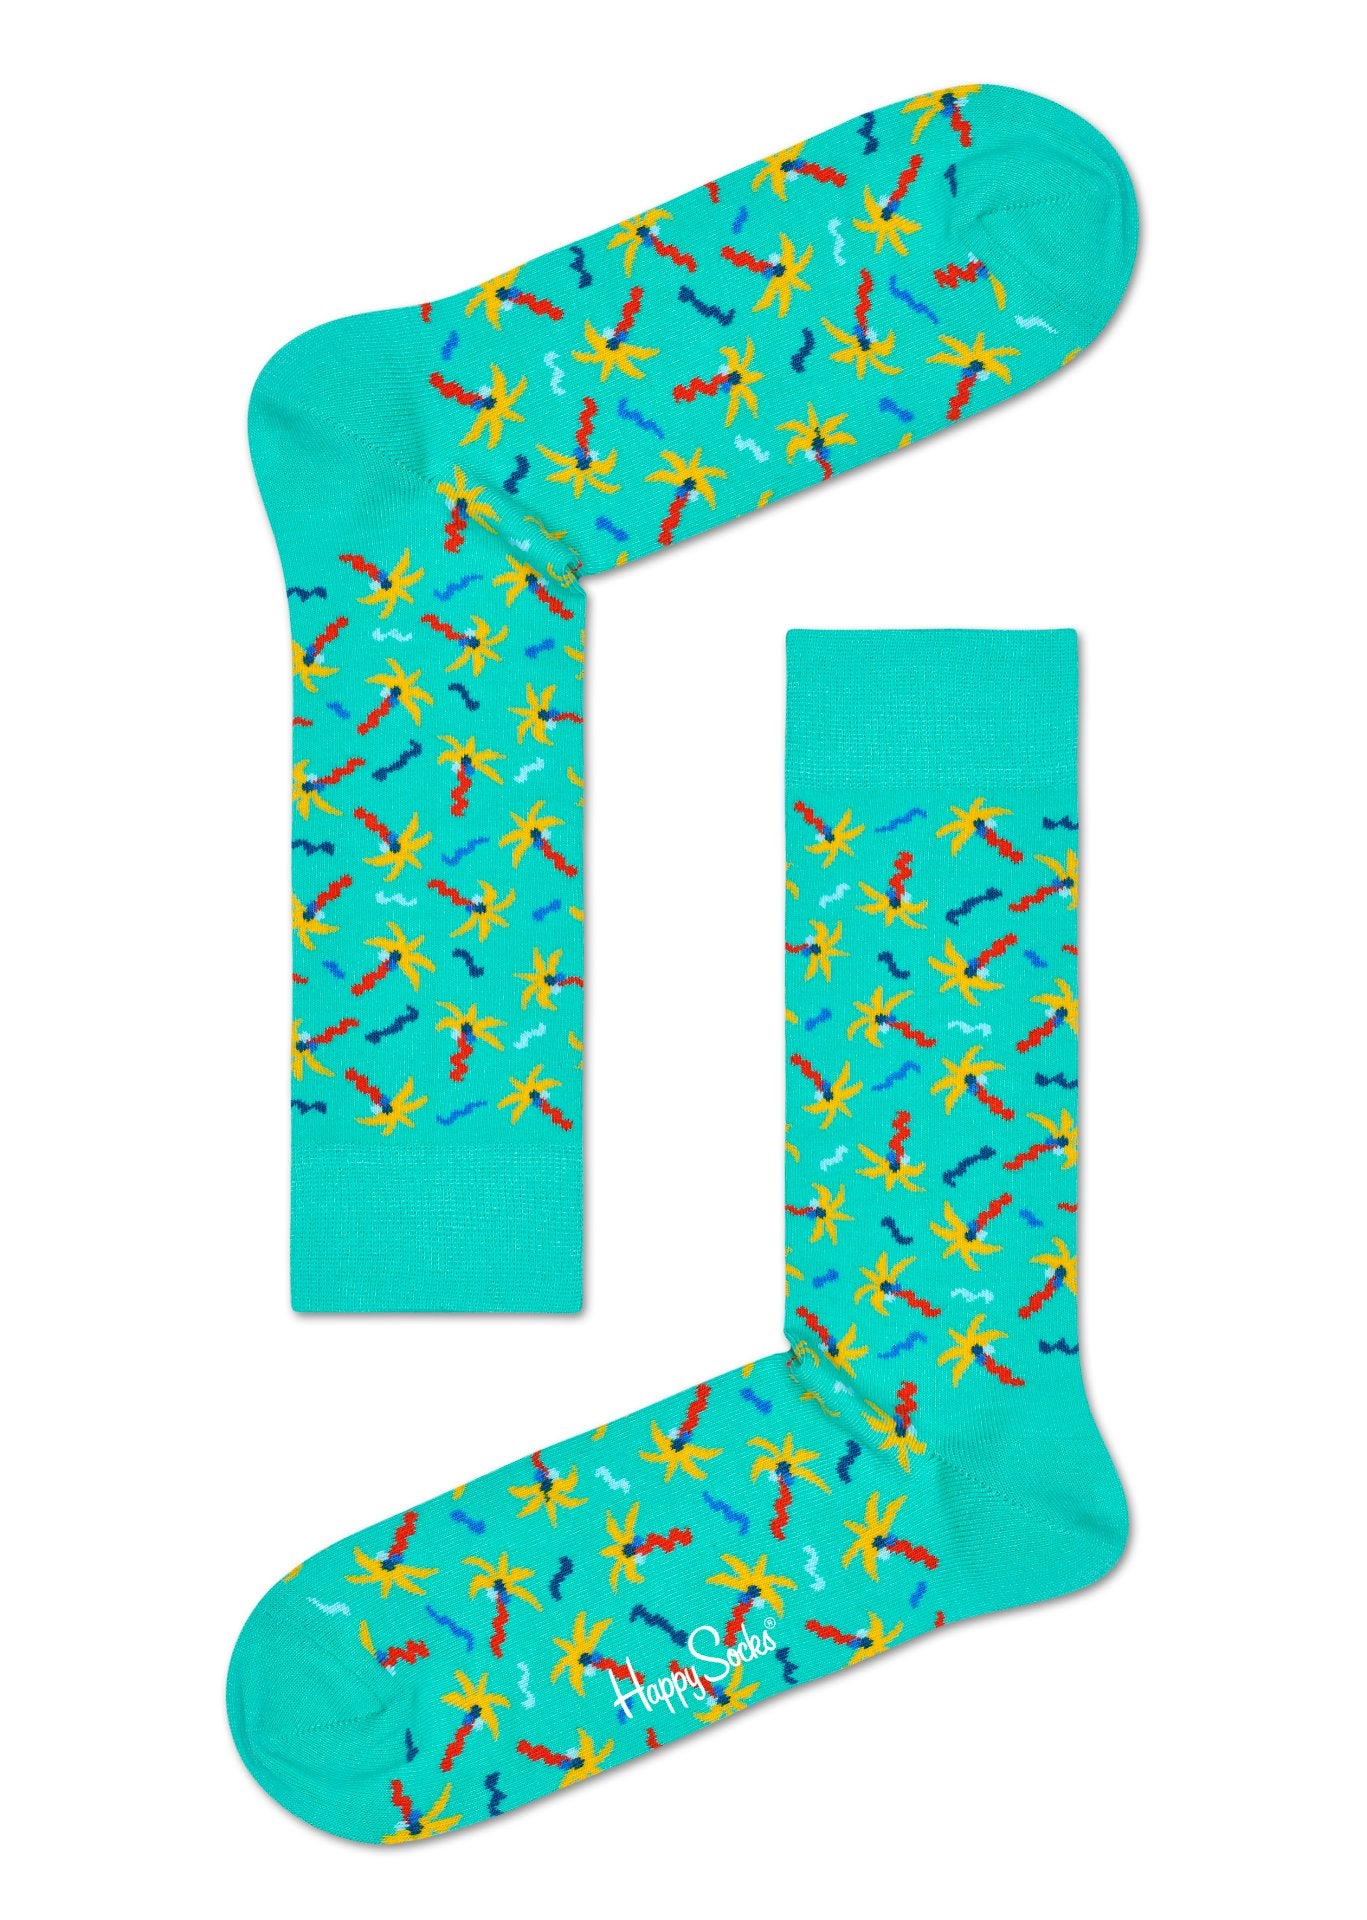 Tyrkysové ponožky Happy Socks s palmami a konfetami, vzor Confetti Palm